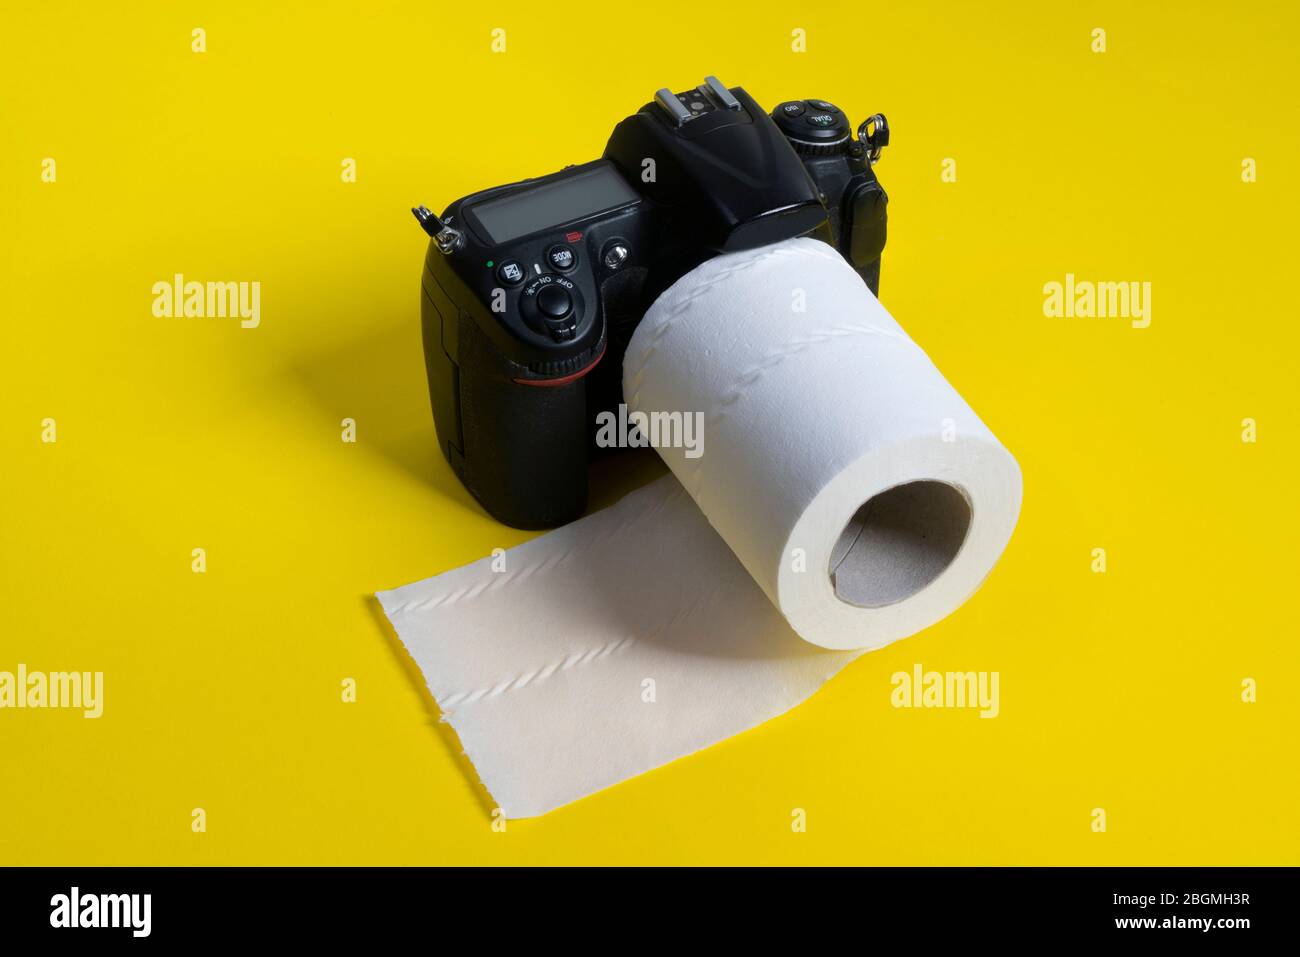 Un appareil photo reflex avec un rouleau de papier toilette comme